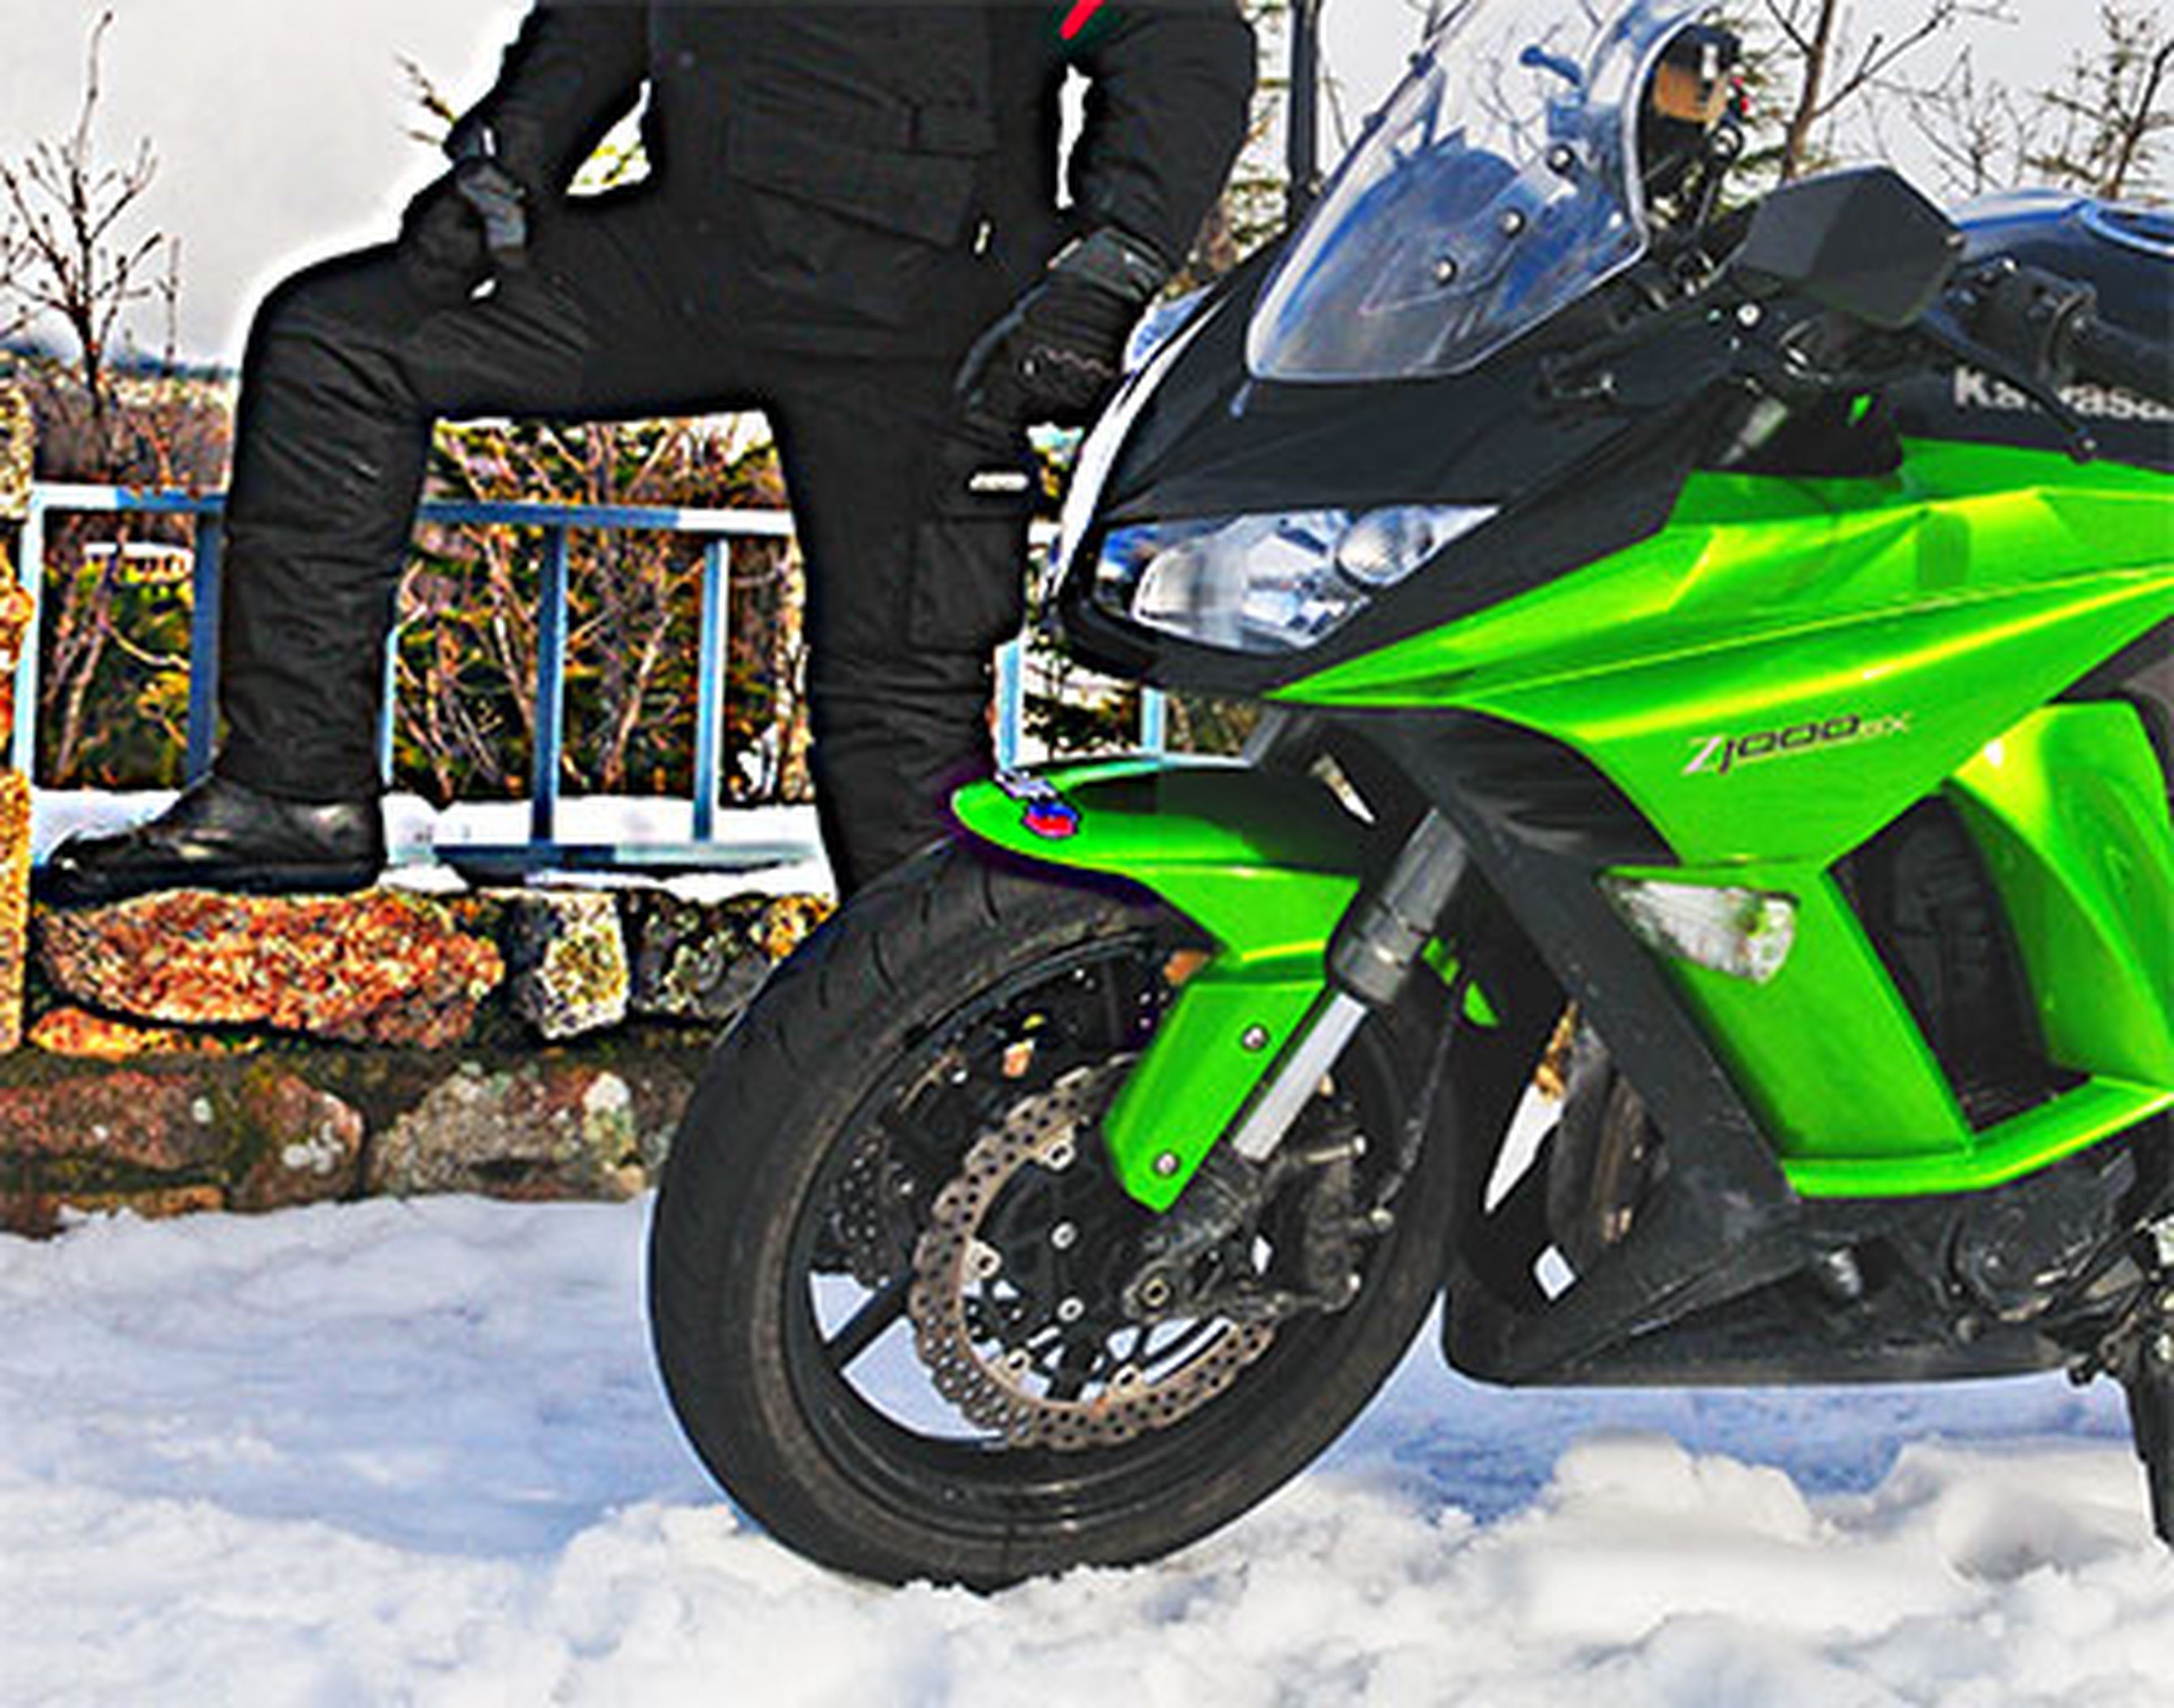 Cómo elegir las mejores botas de moto para el invierno